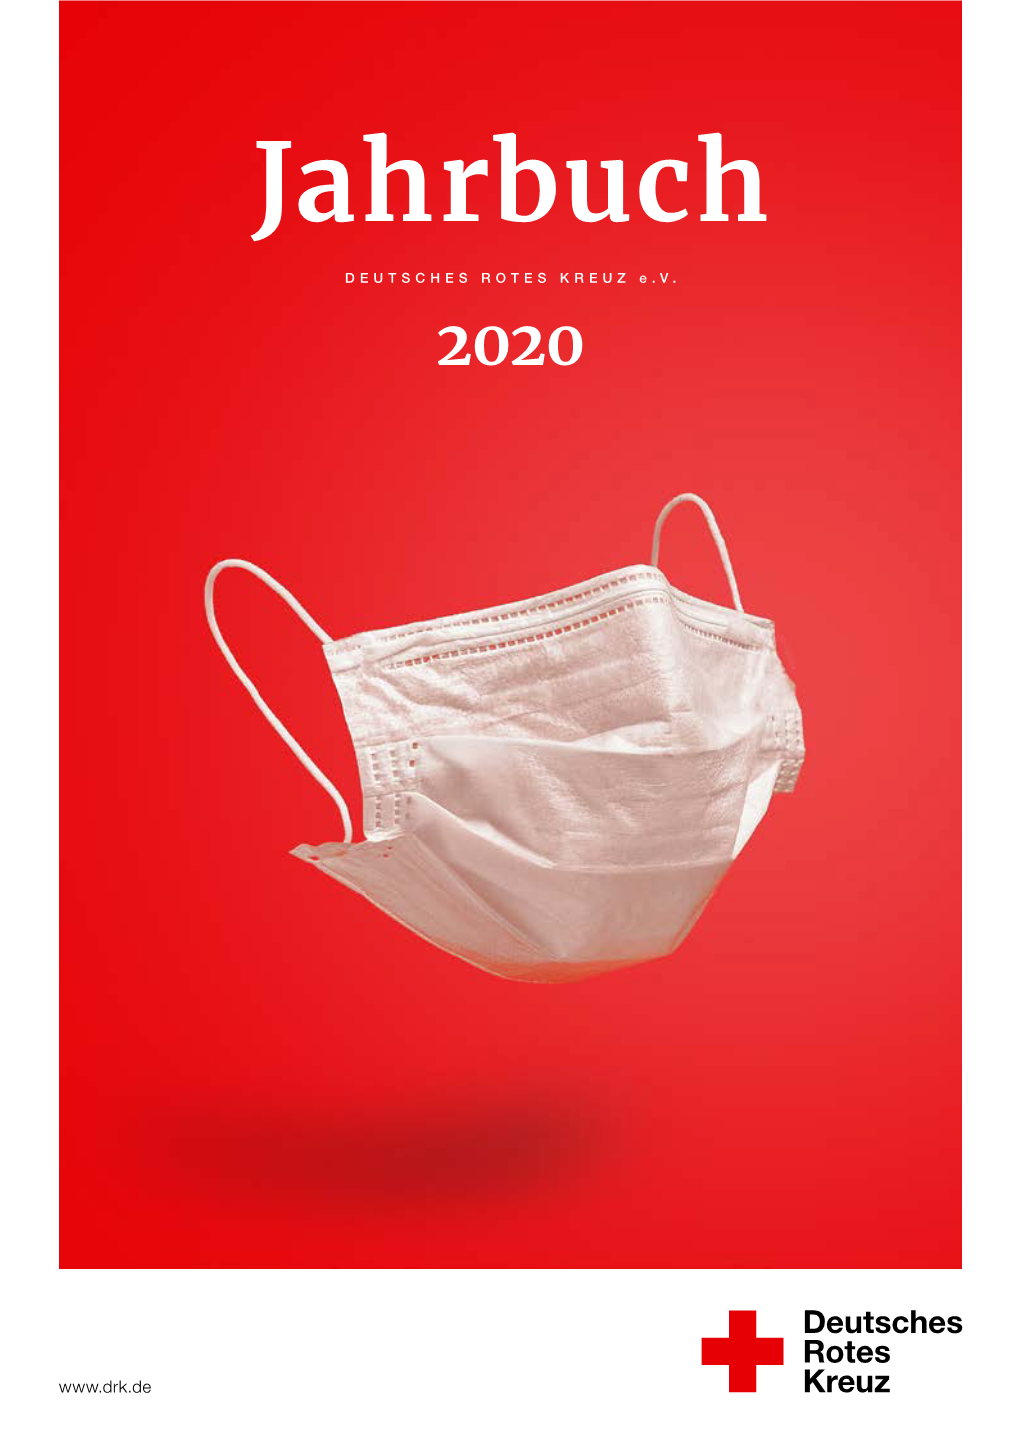 DRK Jahrbuch 2020 Deutsches Rotes Kreuz E.V